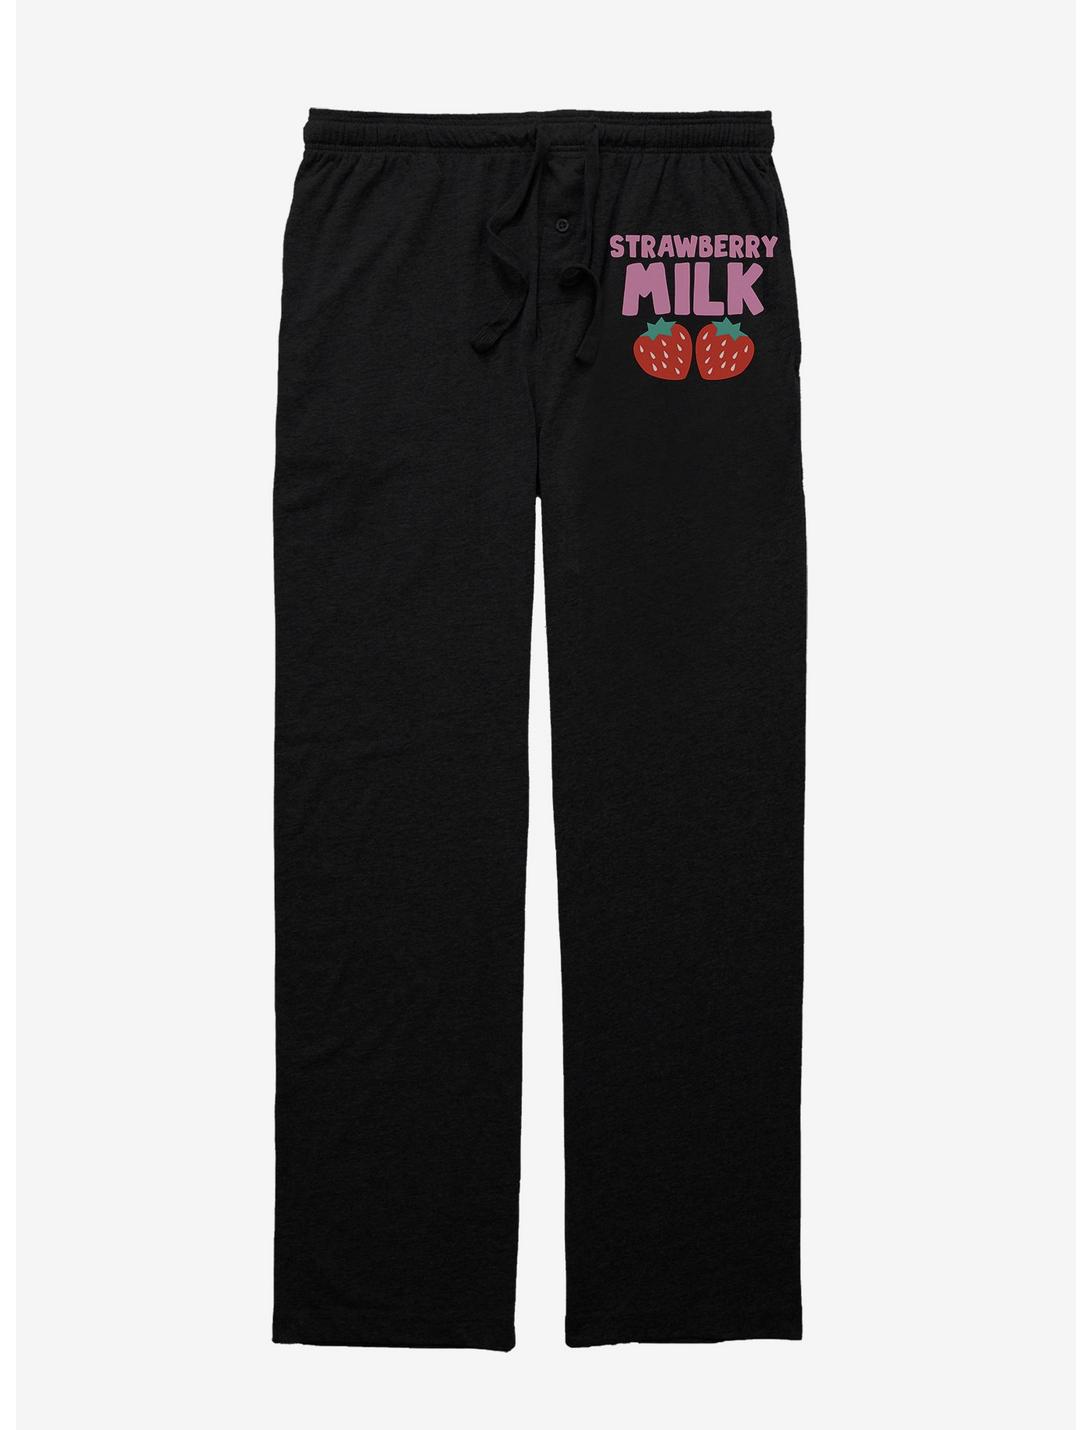 Strawberry Milk Milk Berries Pajama Pants, BLACK, hi-res